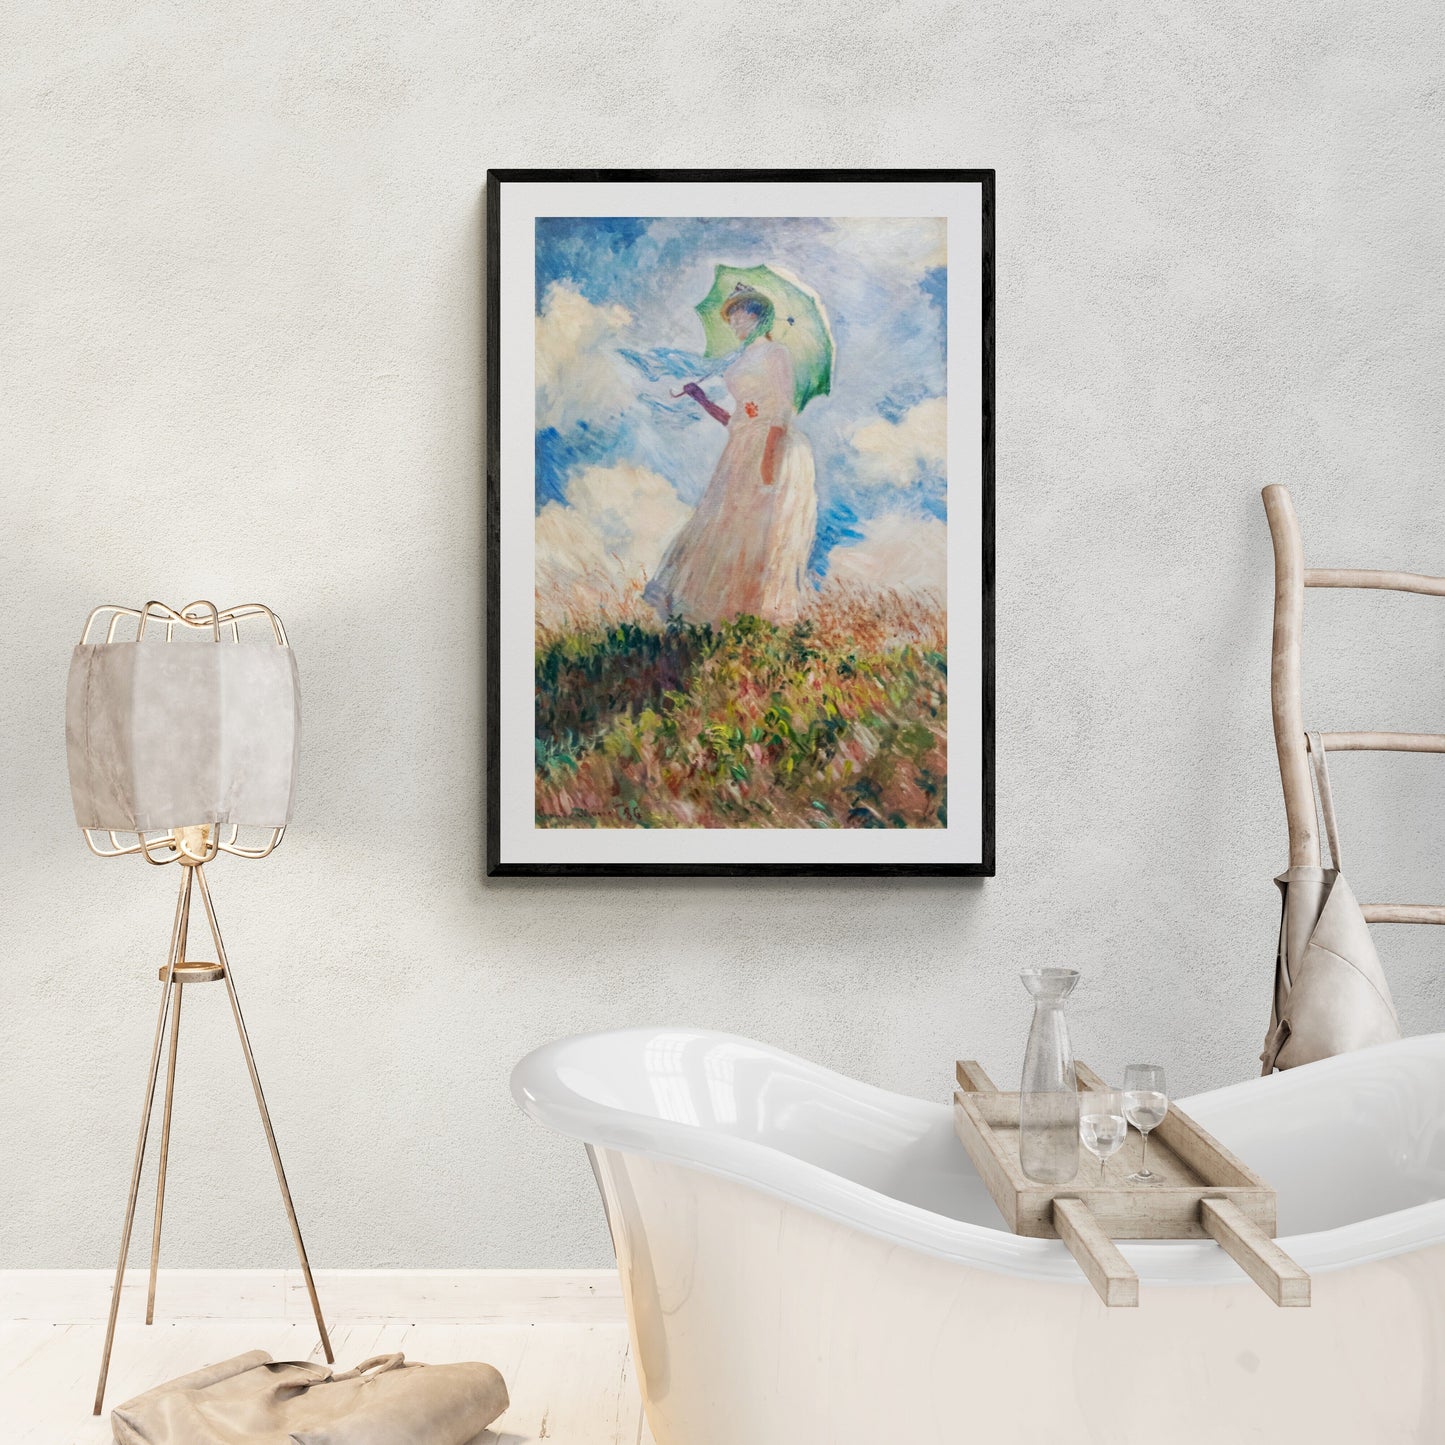 Suzanne (1800s) | Vintage bathroom prints | Claude Monet Posters, Prints, & Visual Artwork The Trumpet Shop   